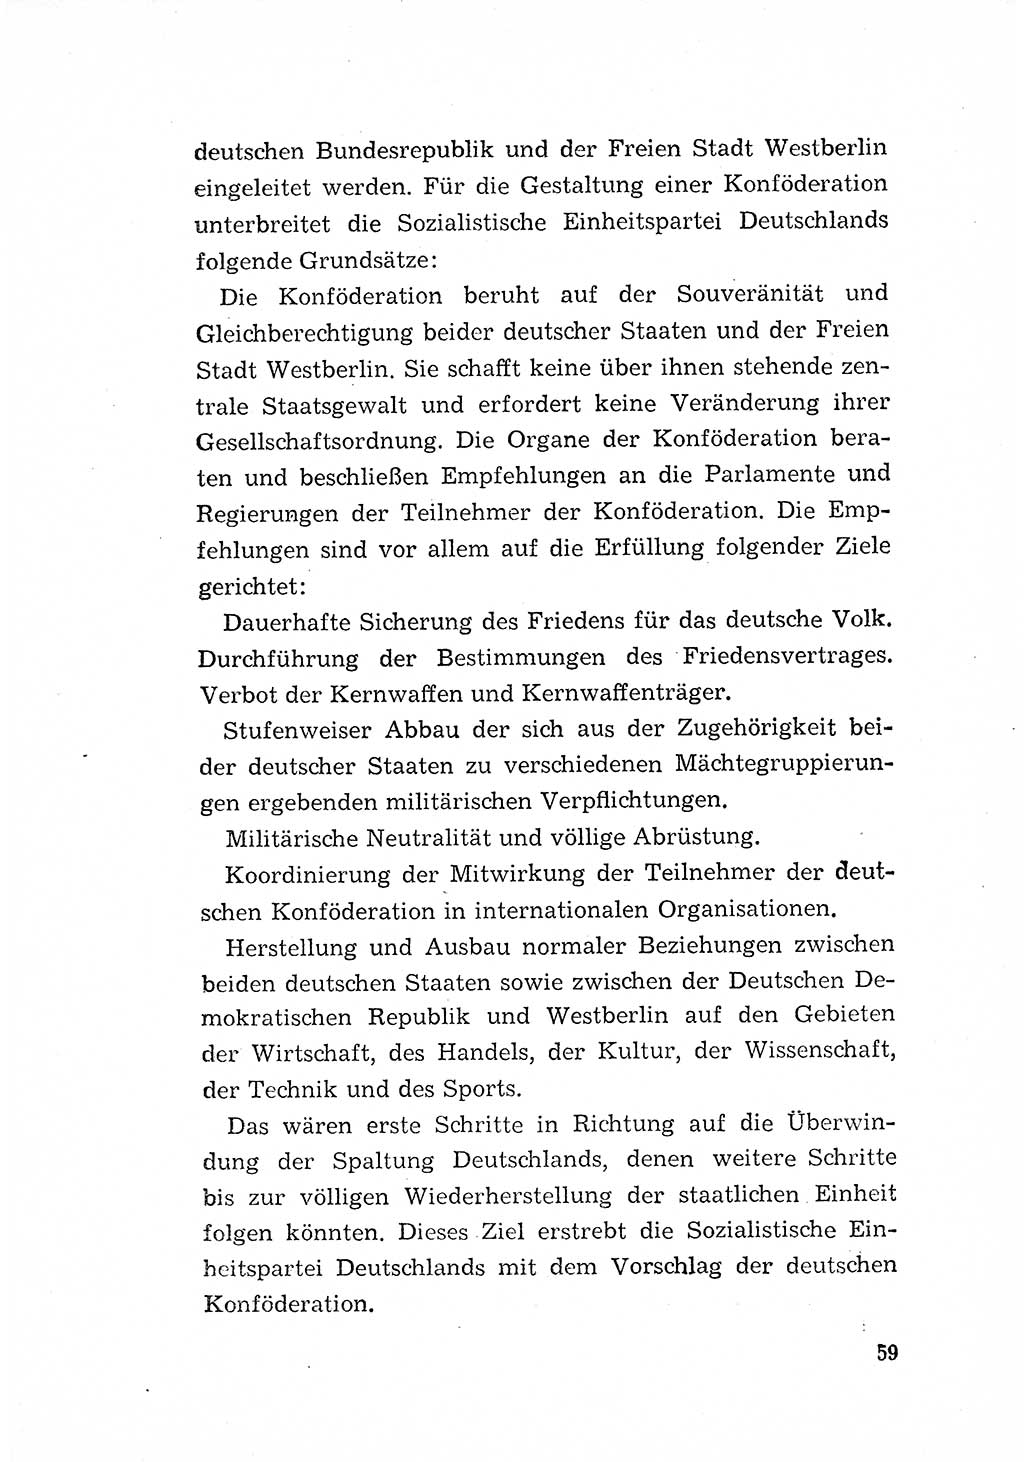 Programm der Sozialistischen Einheitspartei Deutschlands (SED) [Deutsche Demokratische Republik (DDR)] 1963, Seite 59 (Progr. SED DDR 1963, S. 59)